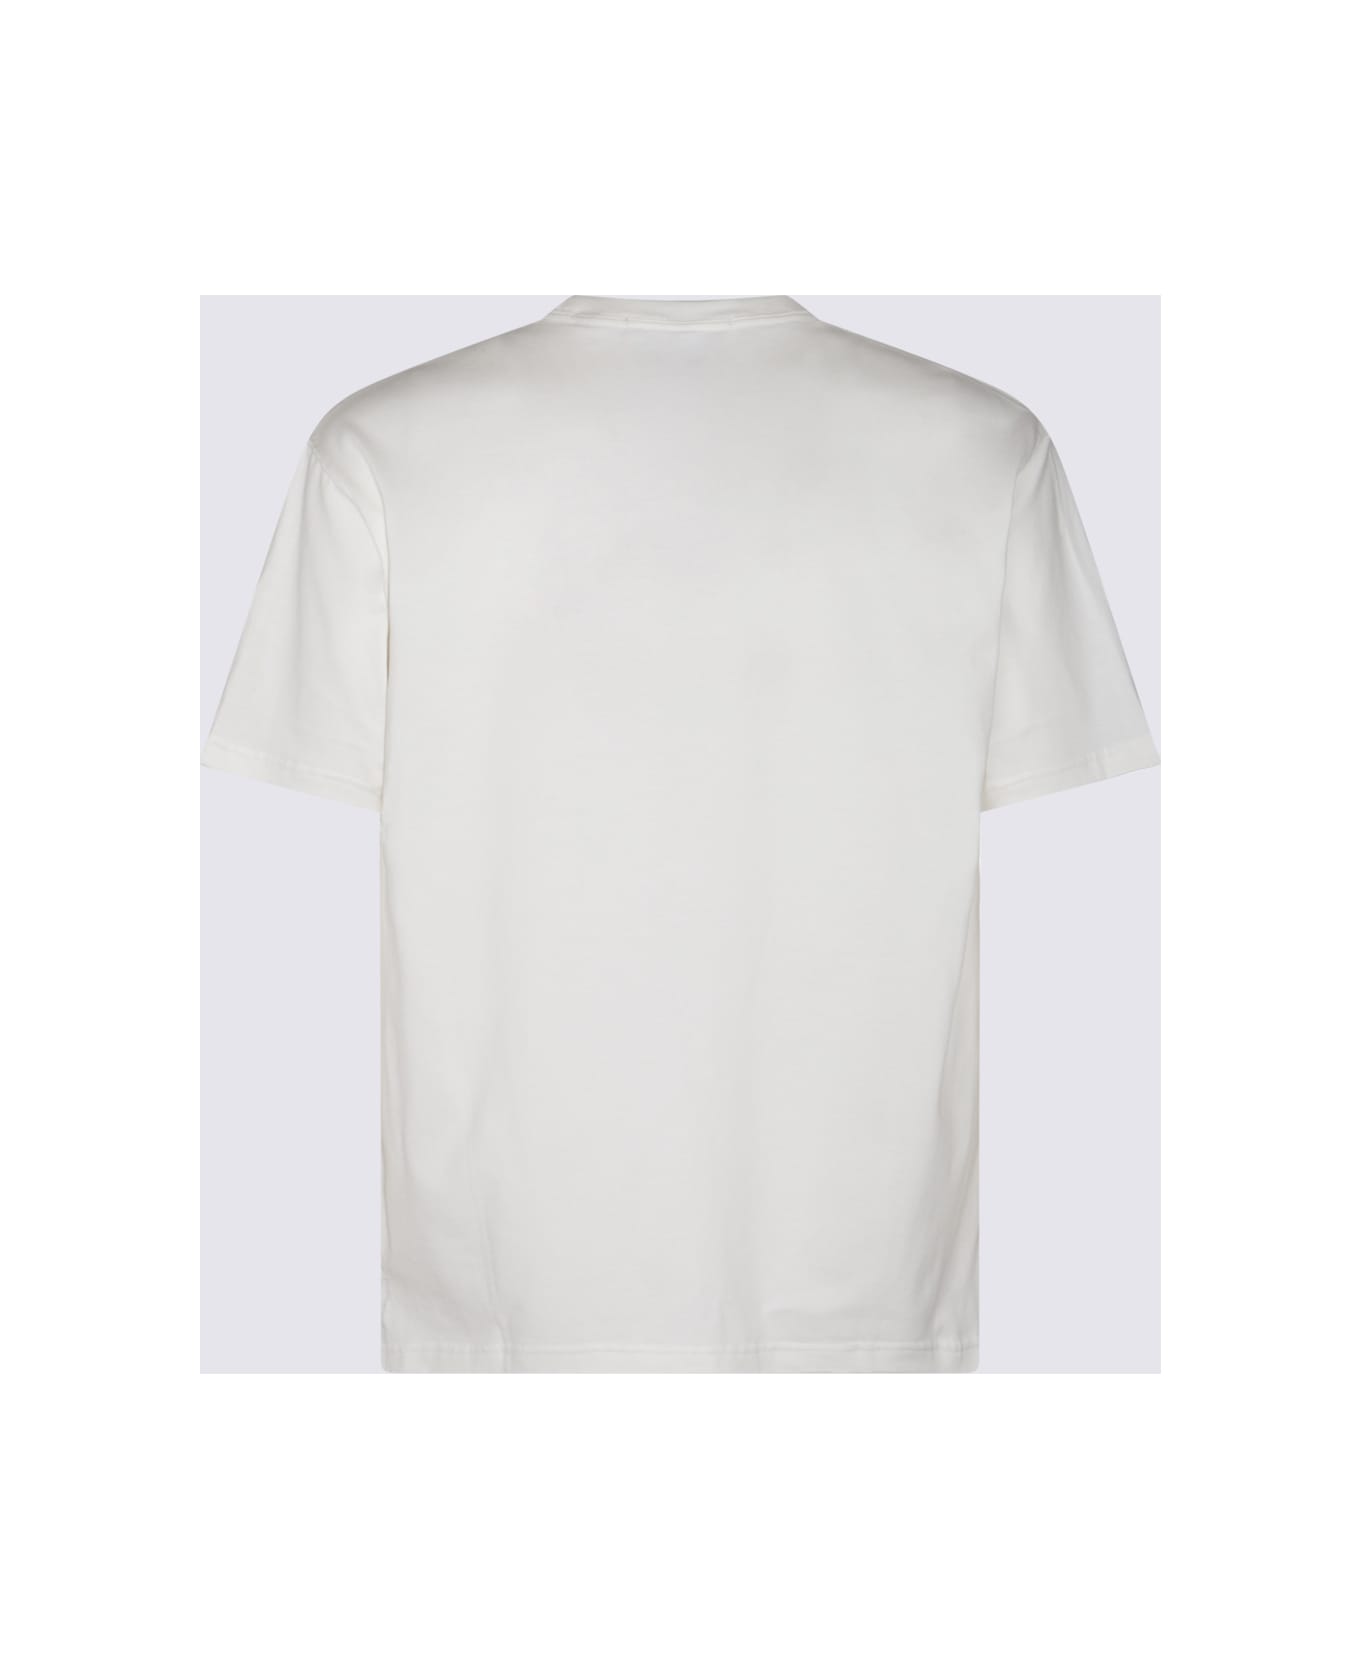 MASTERMIND WORLD White Cotton T-shirt - White シャツ